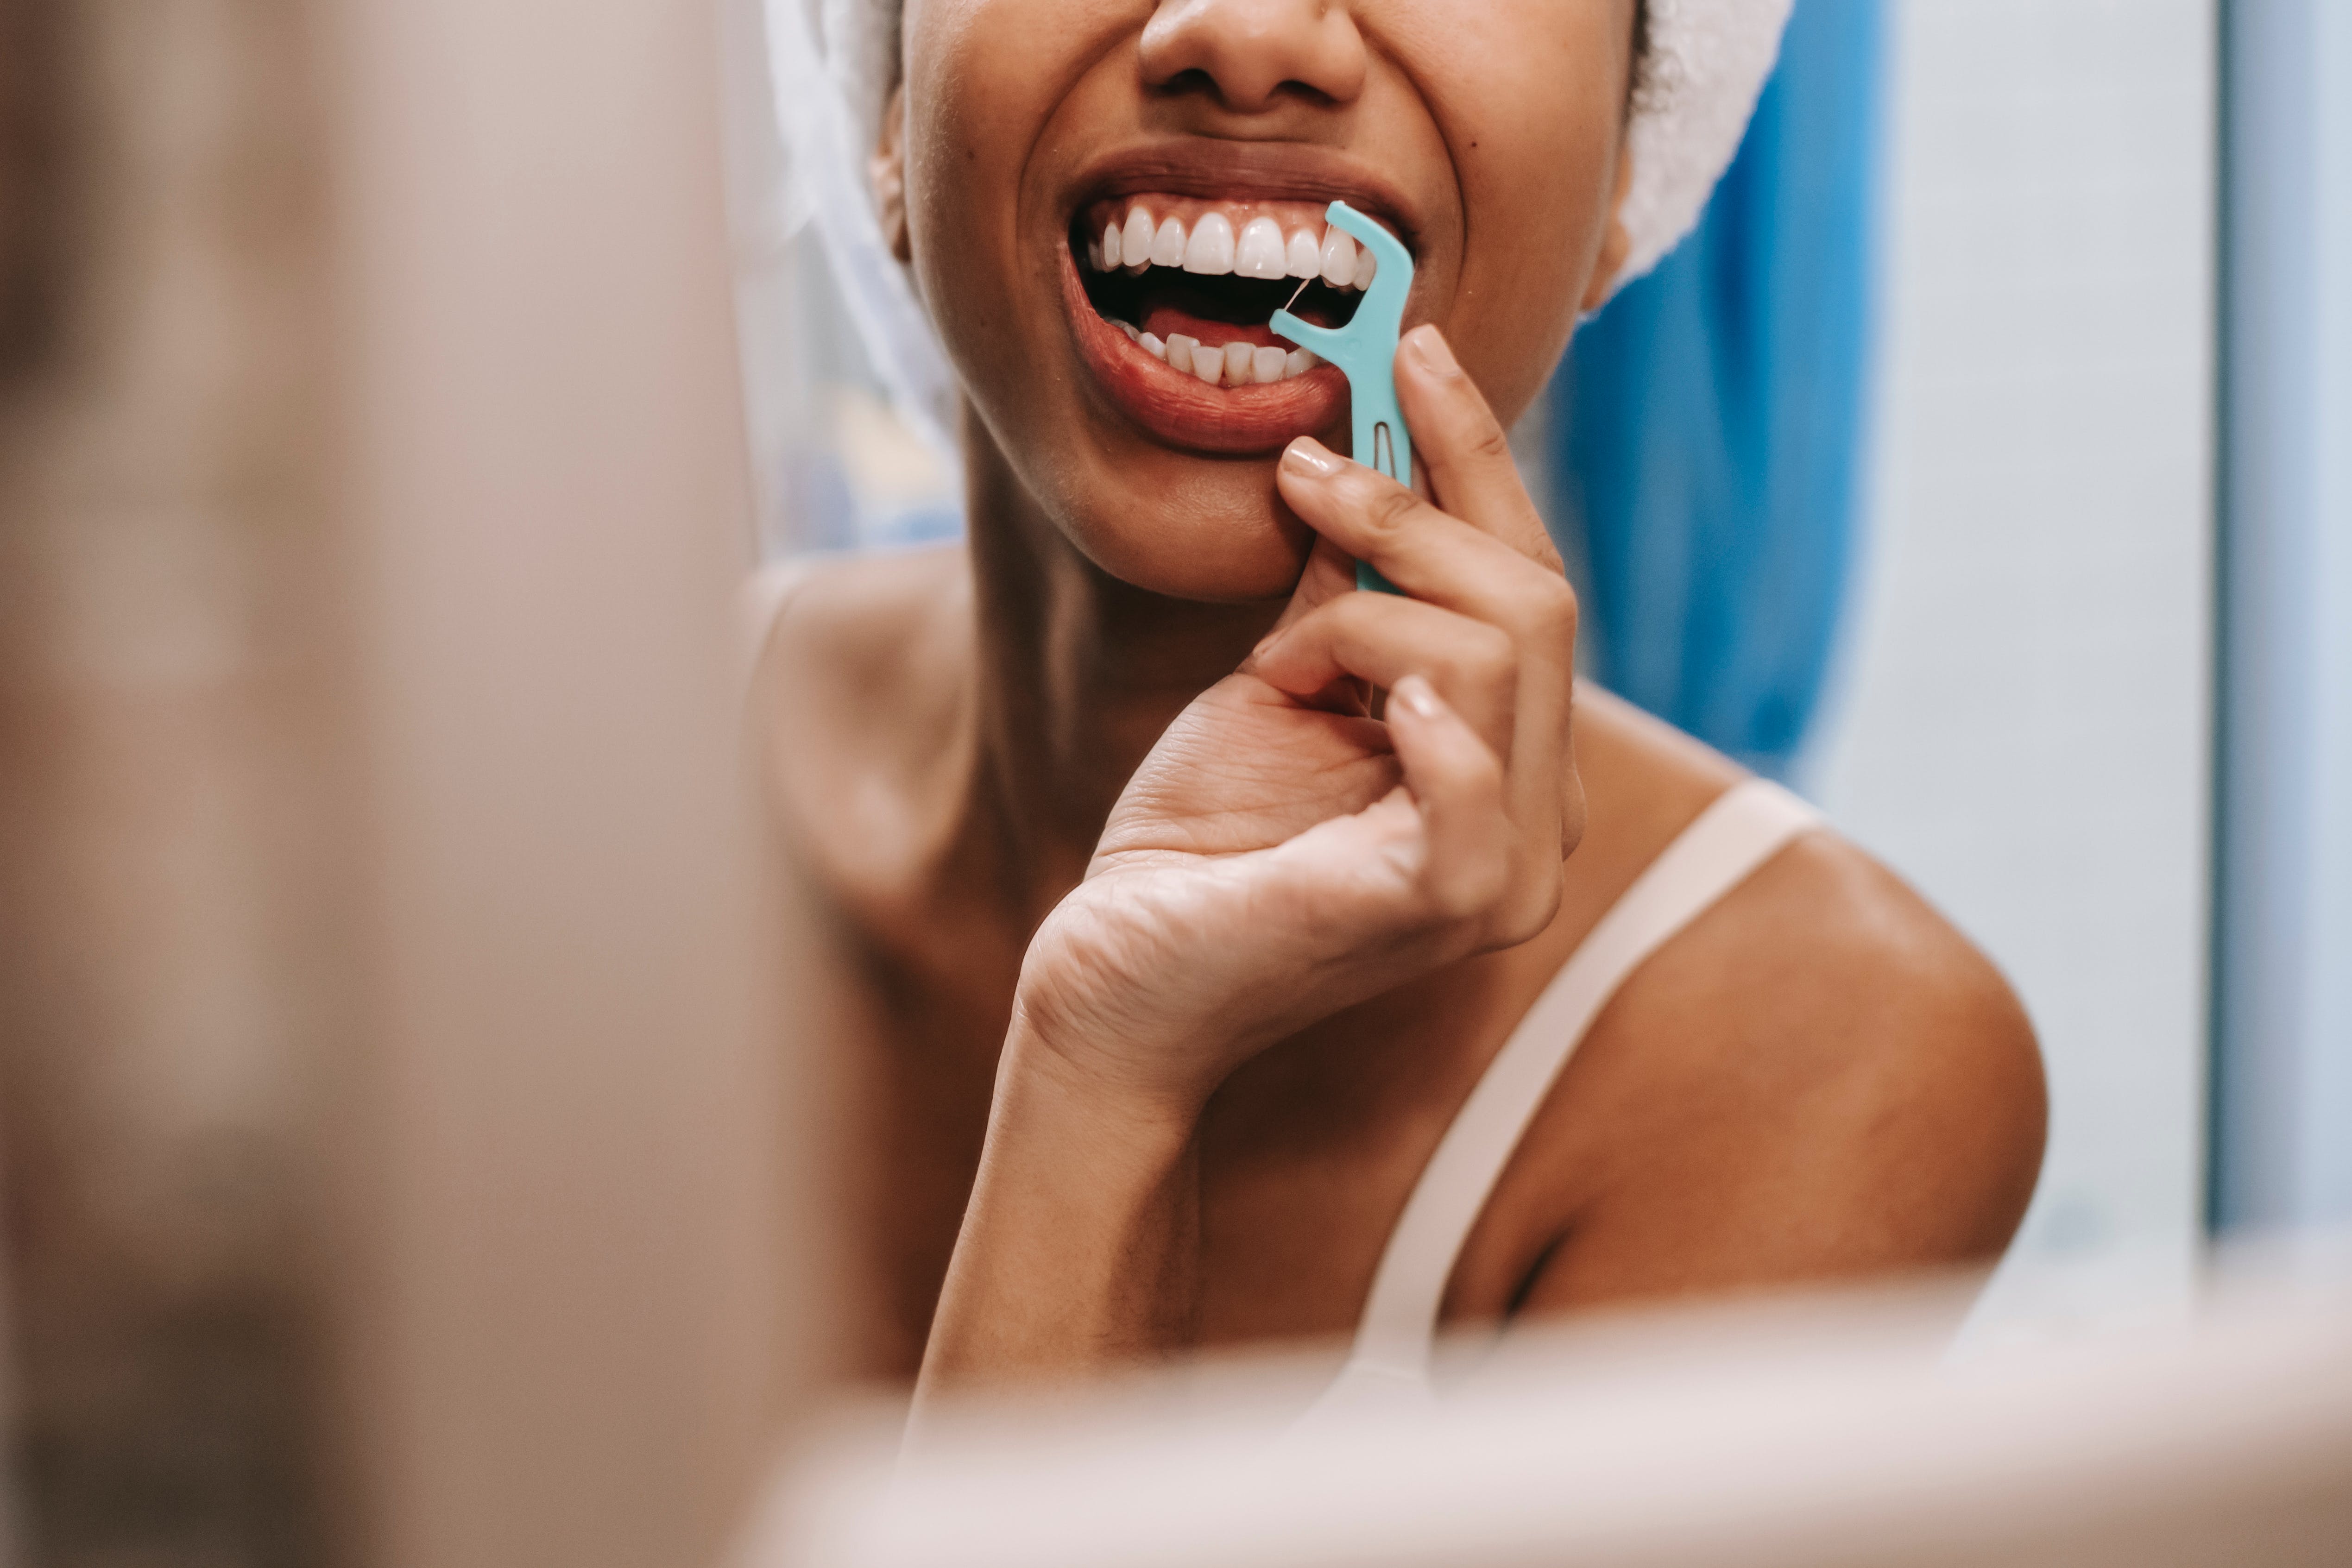 görseldeki kadın diş ipi kullanarak diş sağlığına dikkat etmektedir